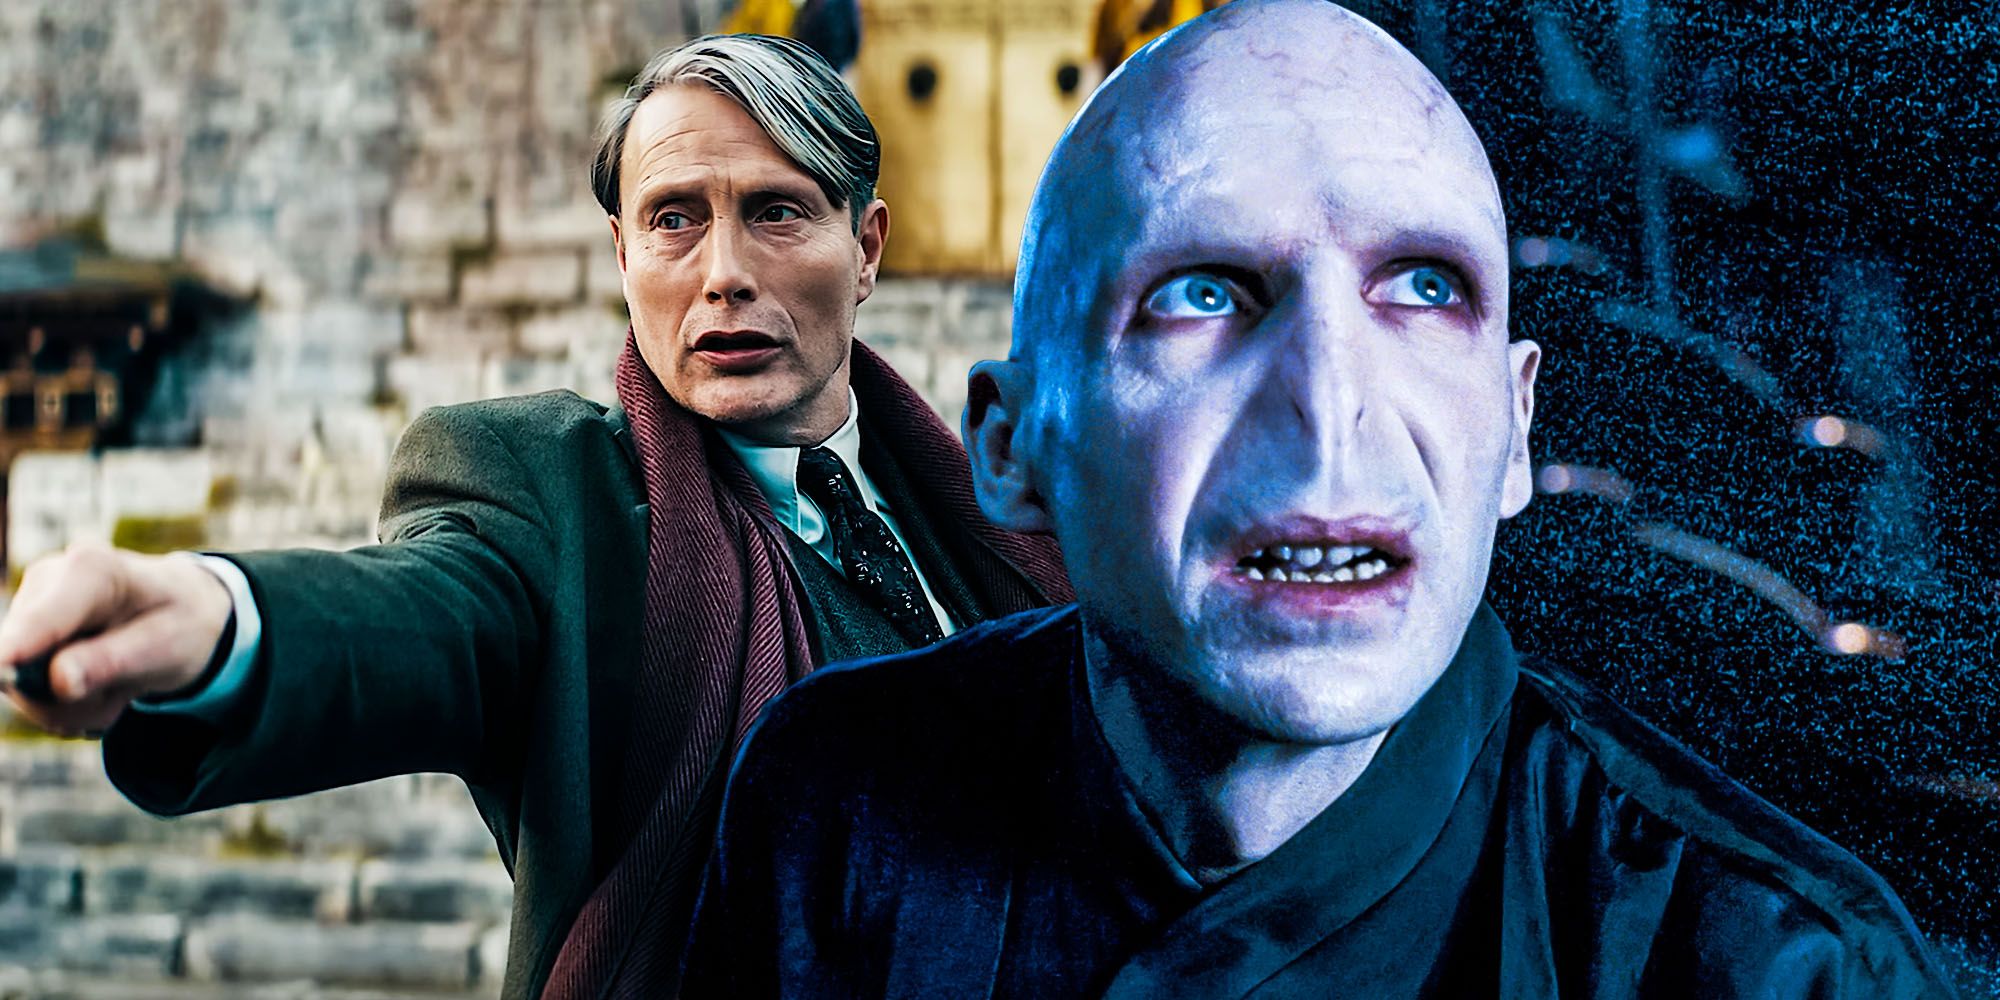 Animales fantásticos ocultos 3 vínculos detallados de Grindelwald con Voldemort